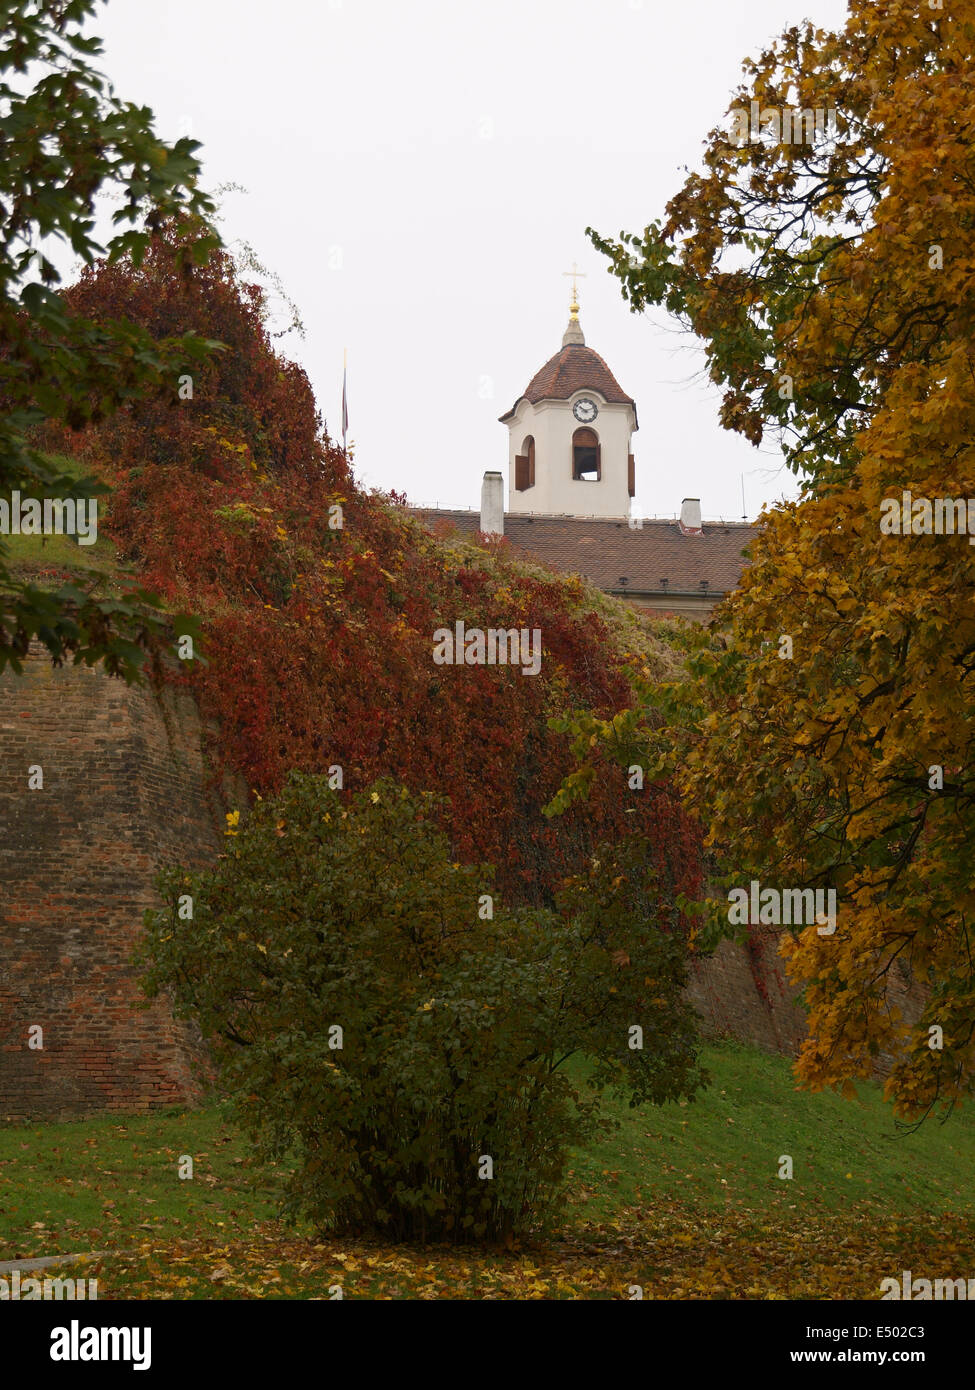 Spilberk castle Stock Photo